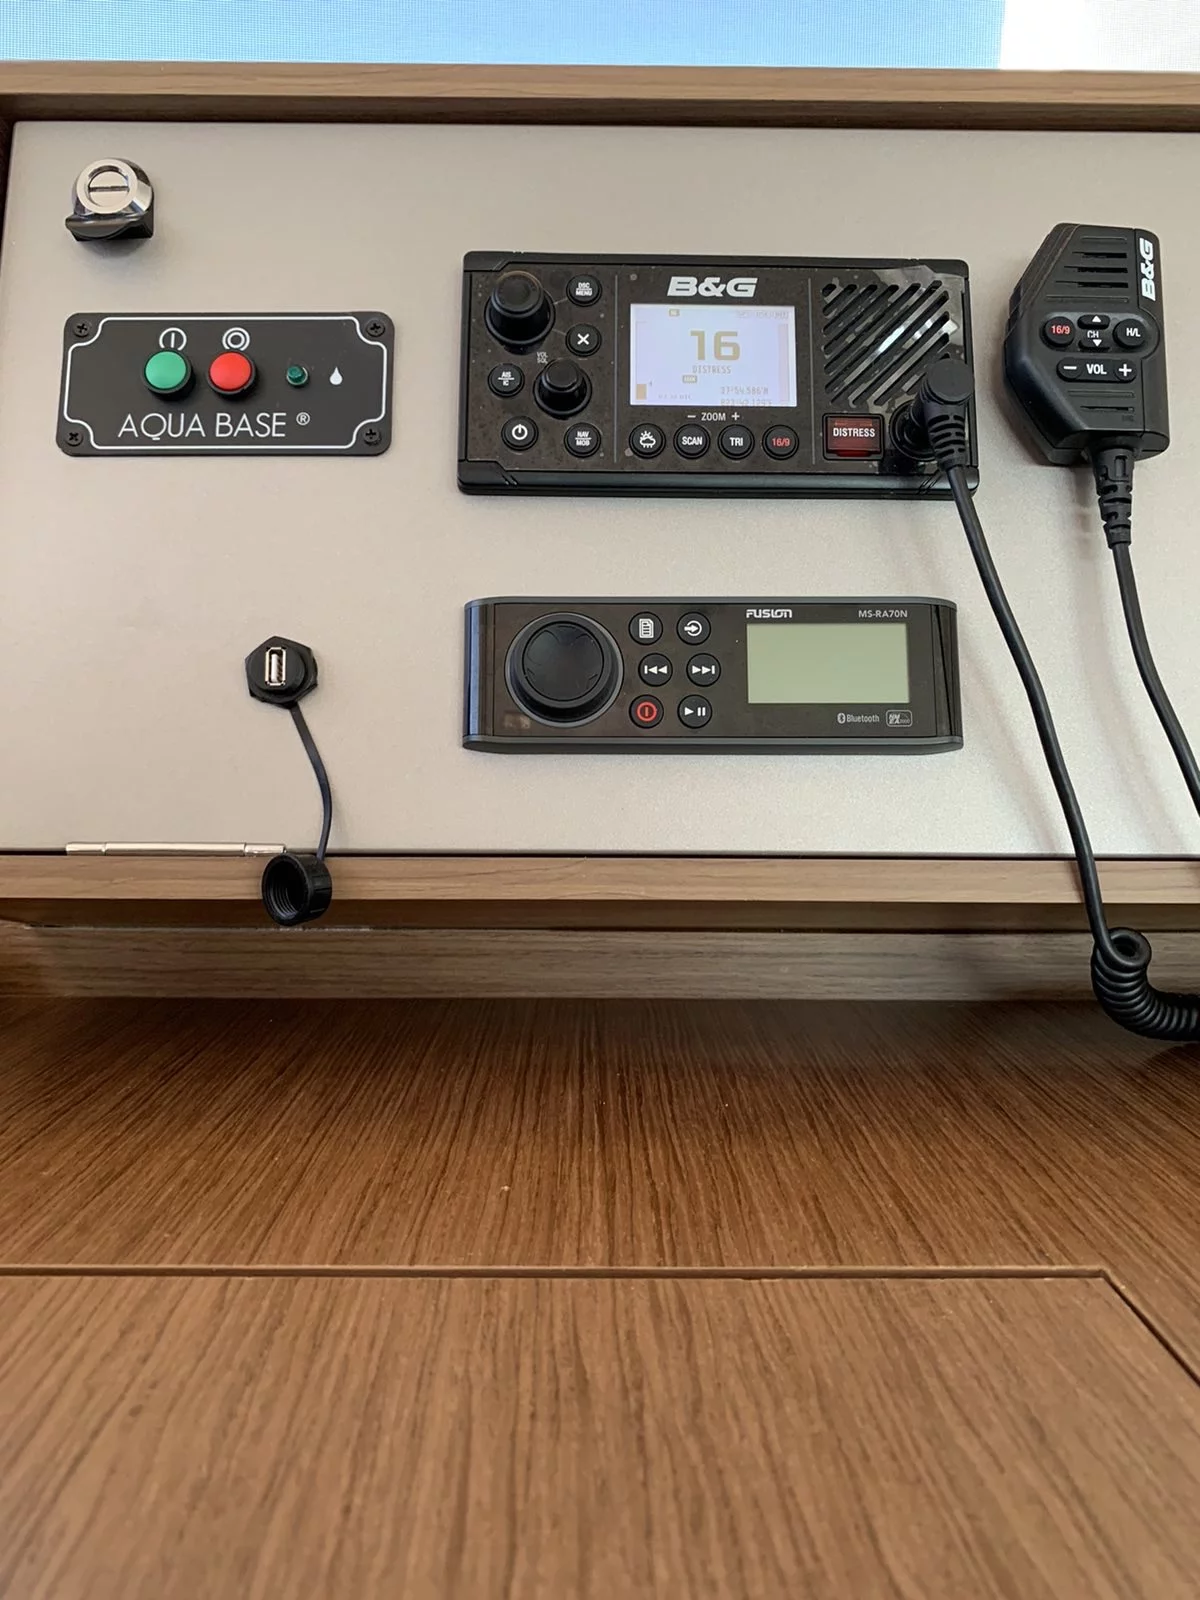 V60-B VHF Marine Radio, DSC, AIS RX/TX